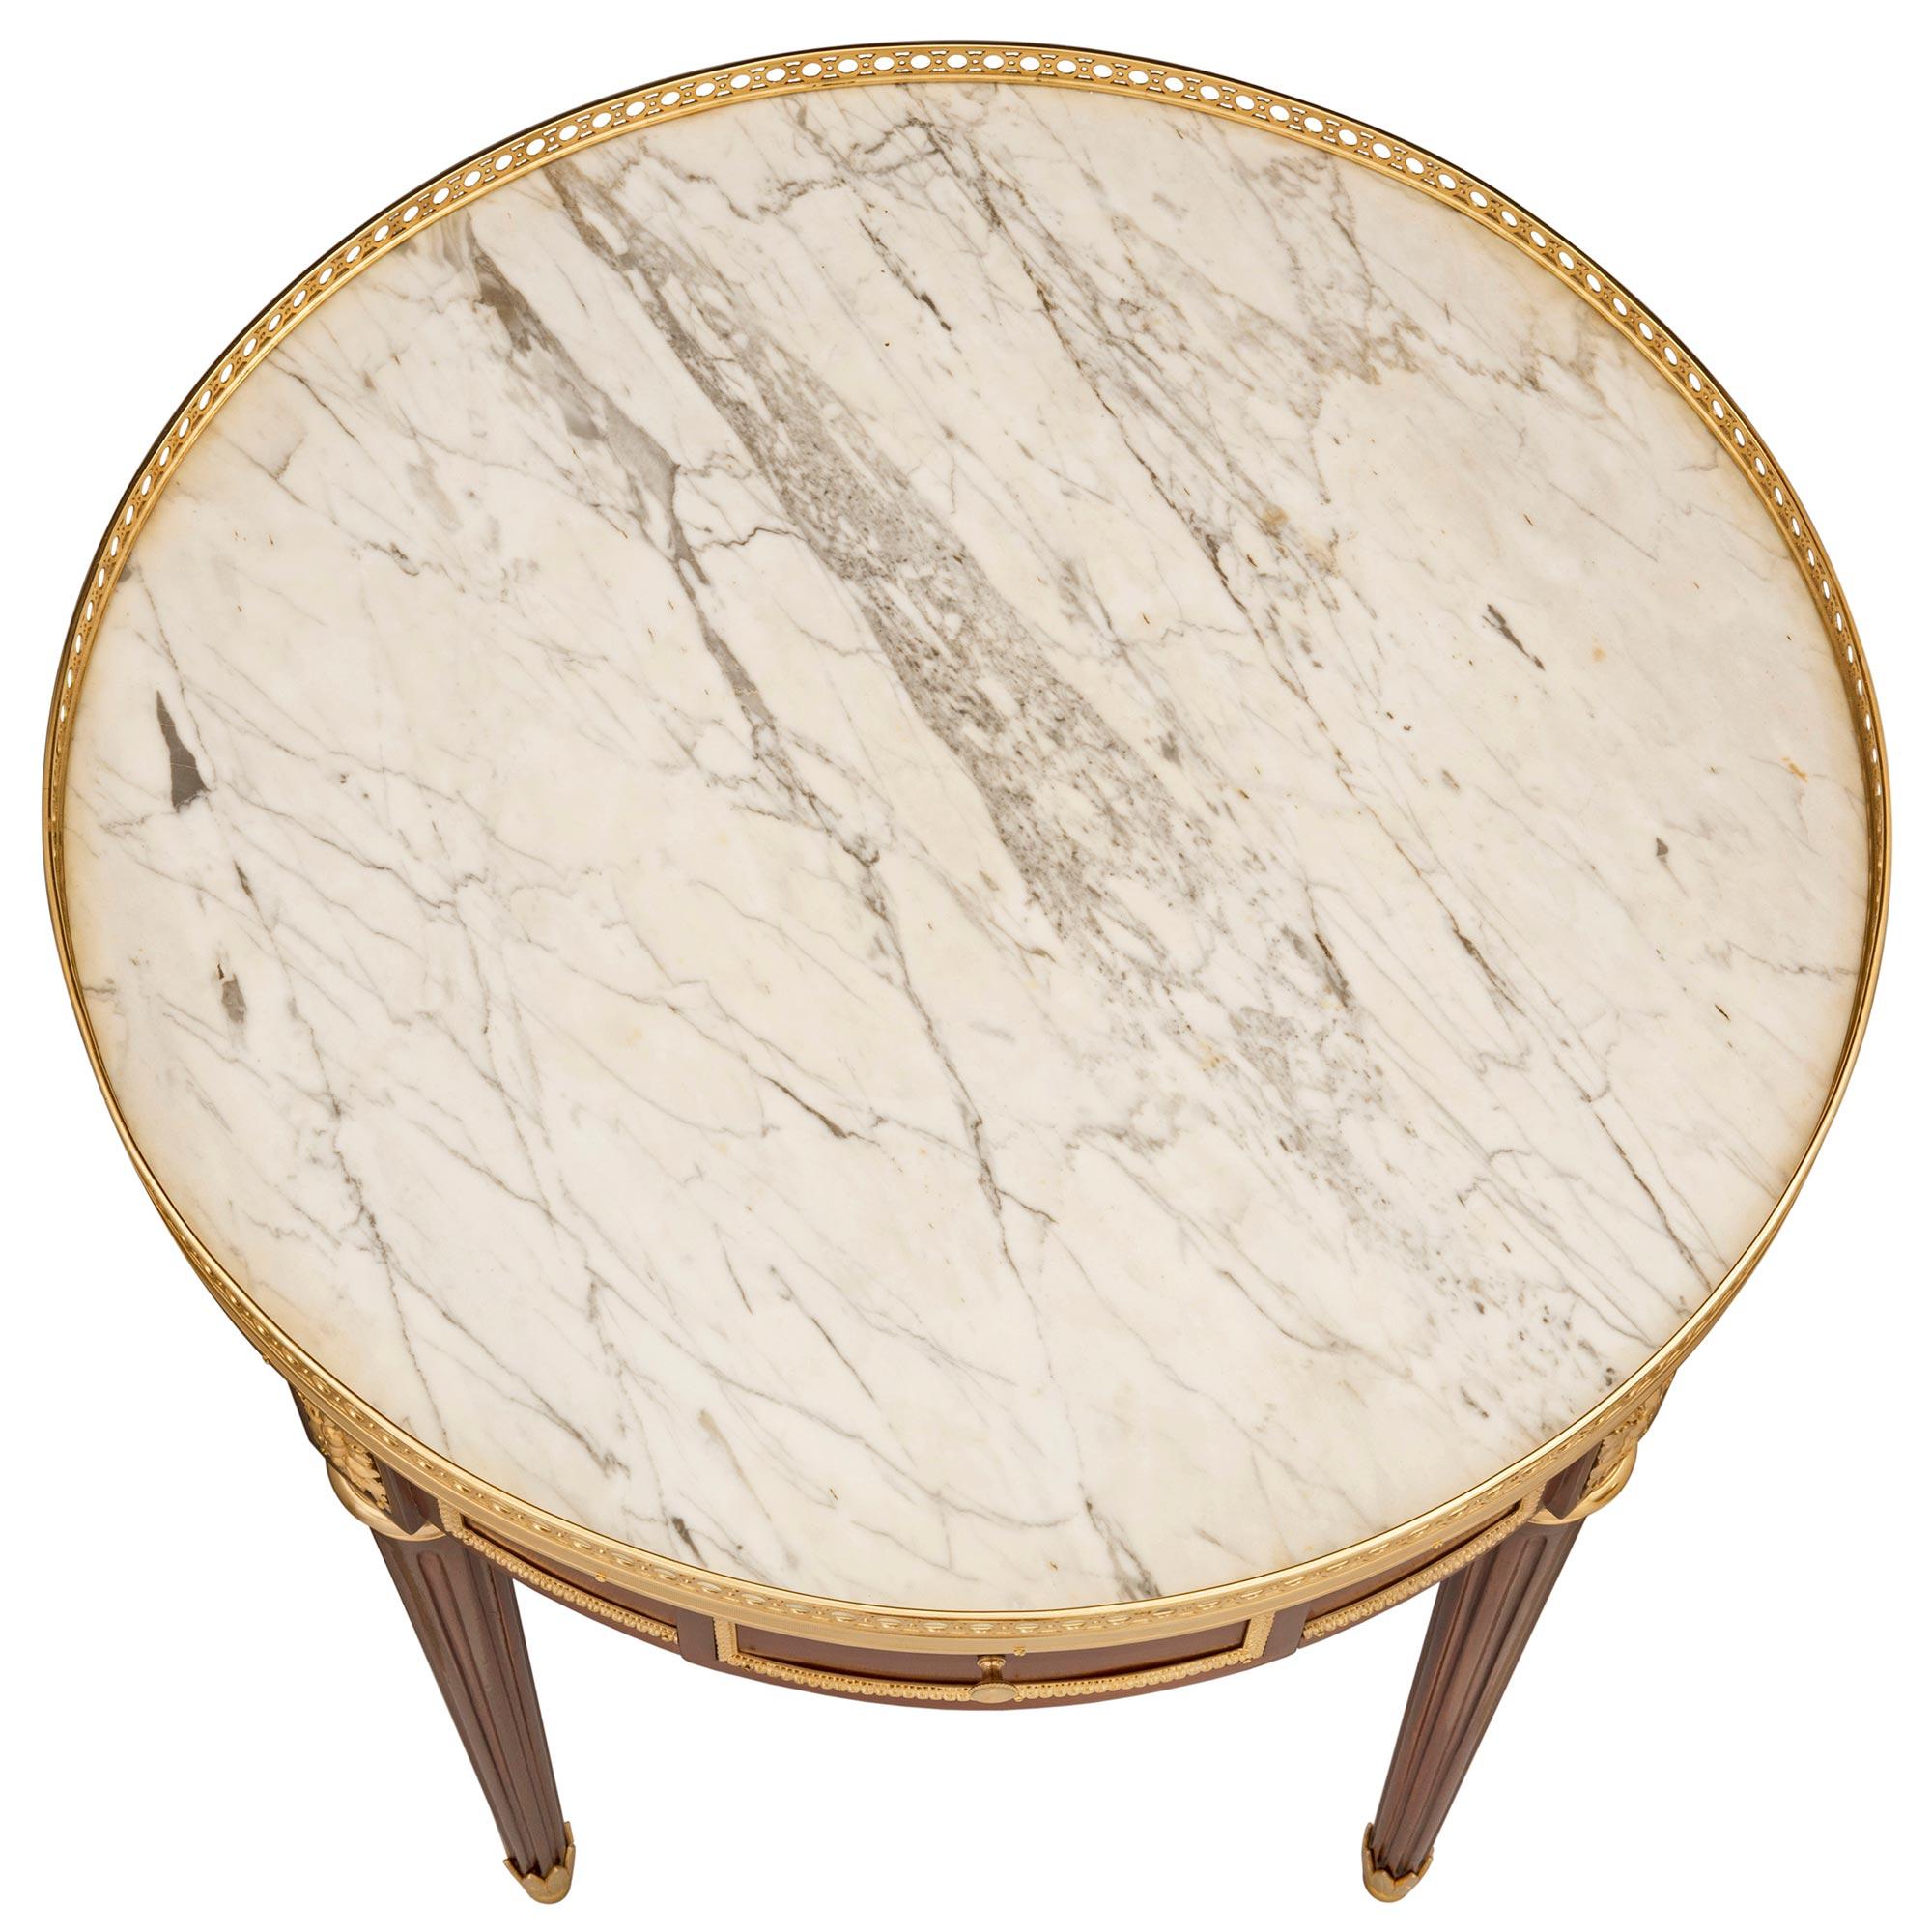 Ein eleganter französischer Beistelltisch aus Mahagoni, Ormolu und weißem Carrara-Marmor aus dem 19. Jahrhundert, zugeschrieben von Krieger. Der Tisch steht auf feinen, kreisförmigen, konisch zulaufenden, kannelierten Beinen mit schön eingepassten,